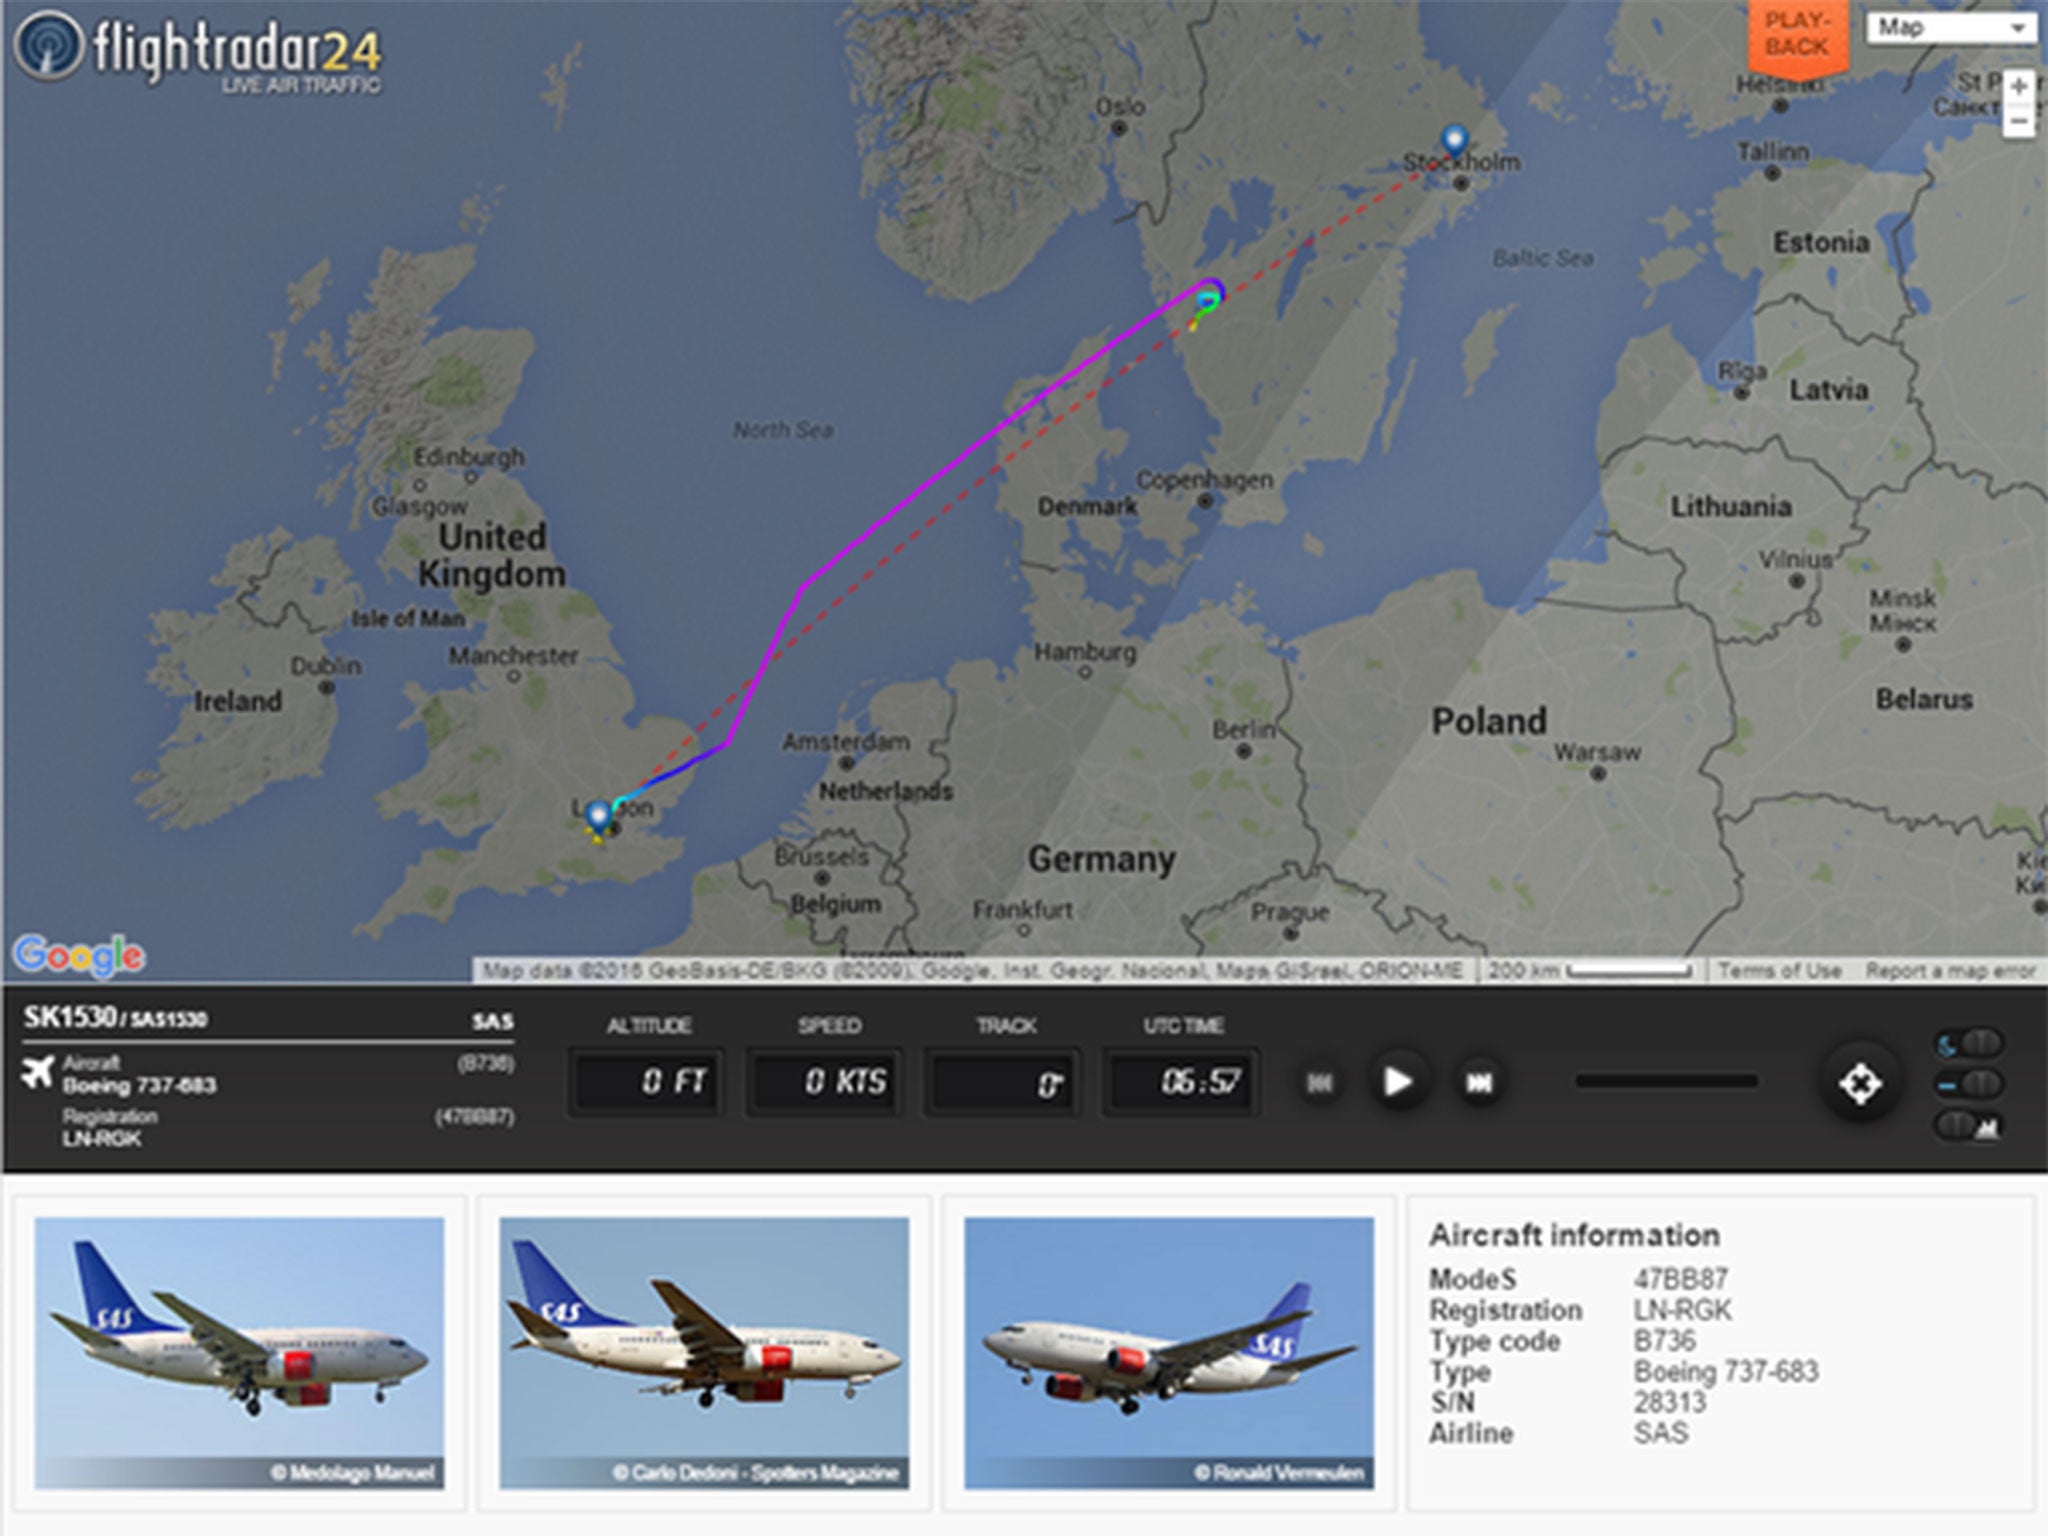 Flightradar24 data showed the plane diverting over Sweden